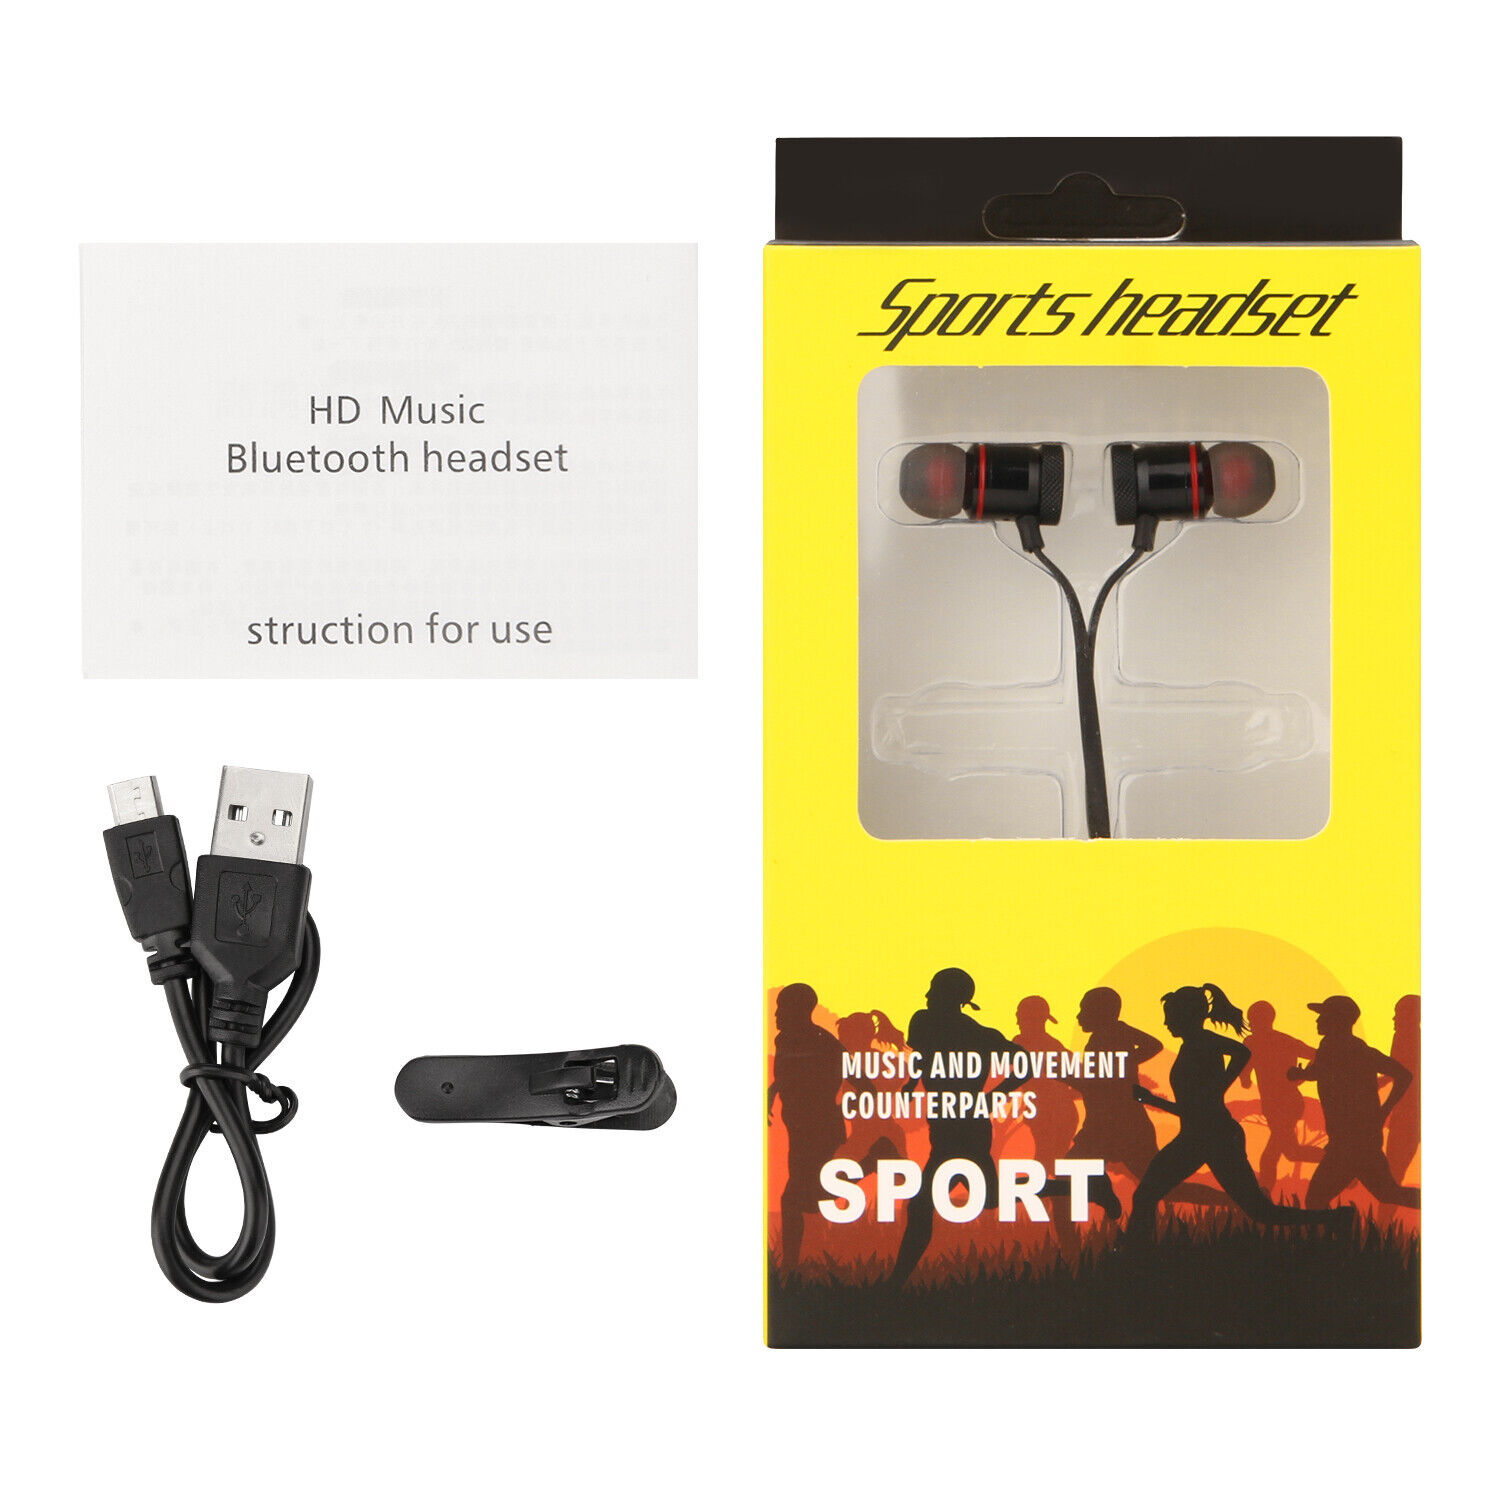 Waterproof Bluetooth Earbuds HD Stereo Sport Wireless Headphones in Ear Headsets Agptek Does Not Apply - фотография #10